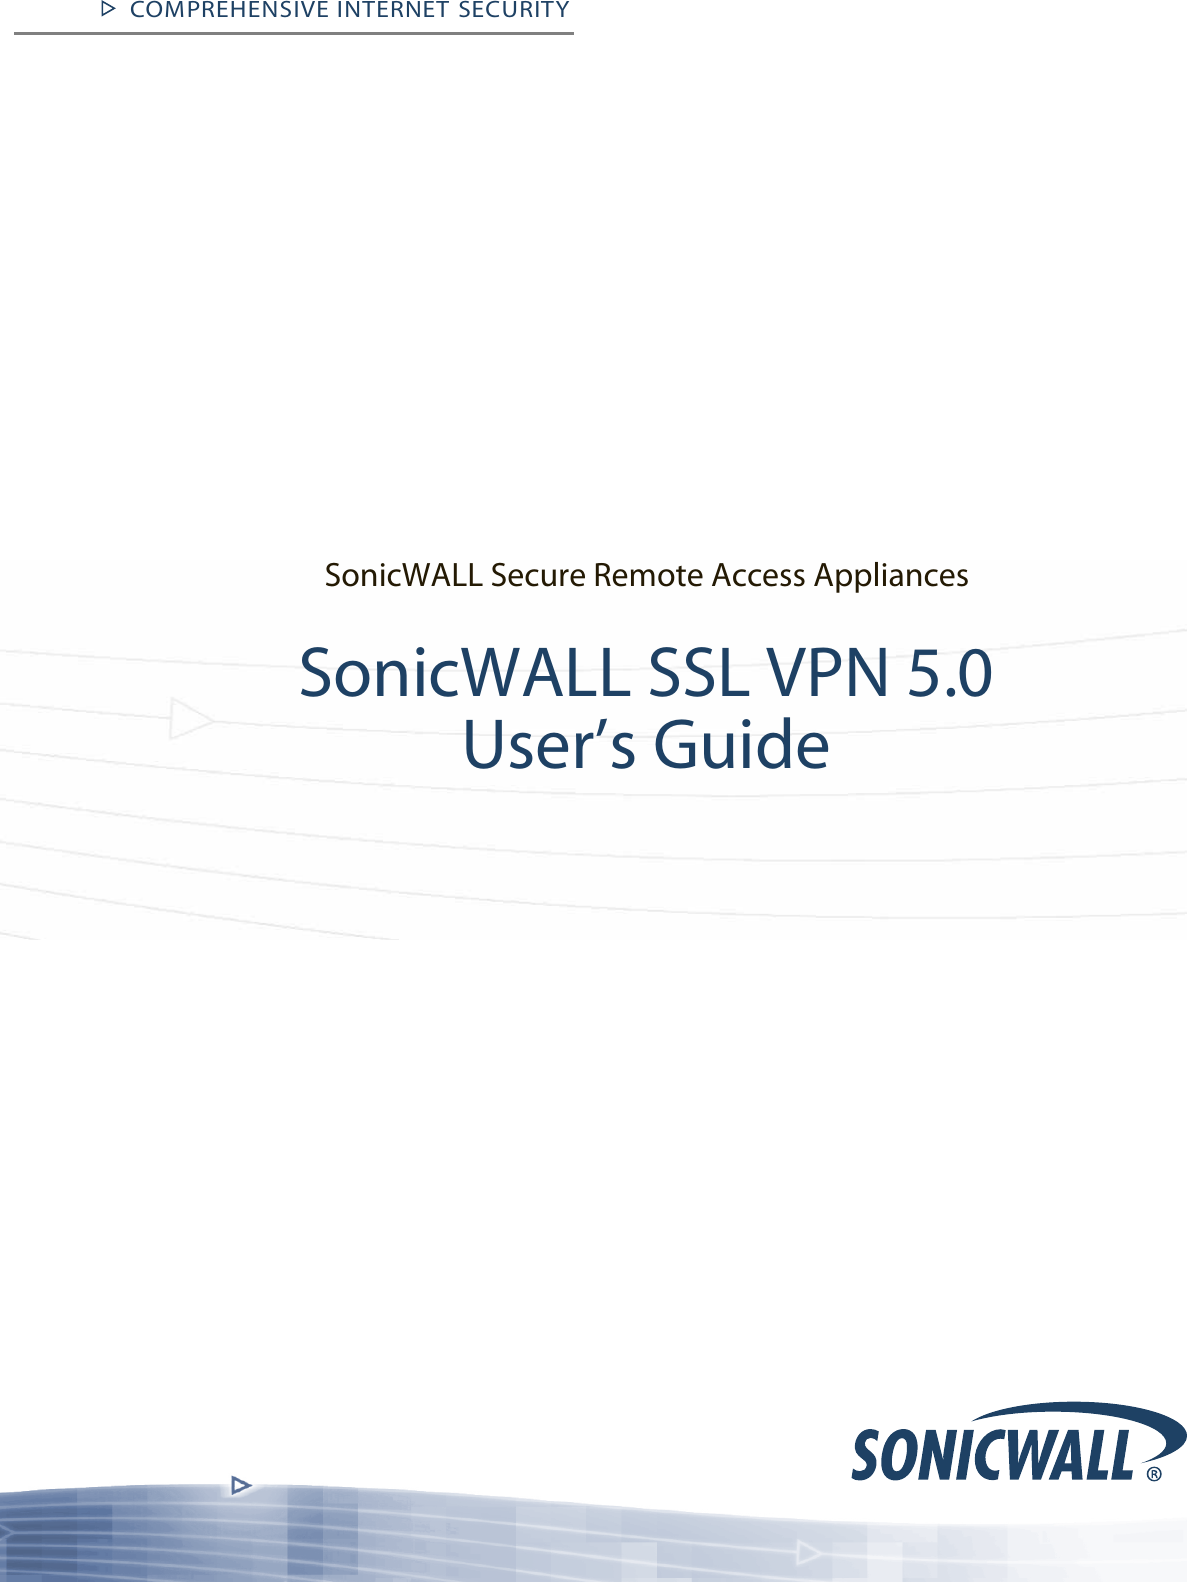 sonicwall global vpn setup guide